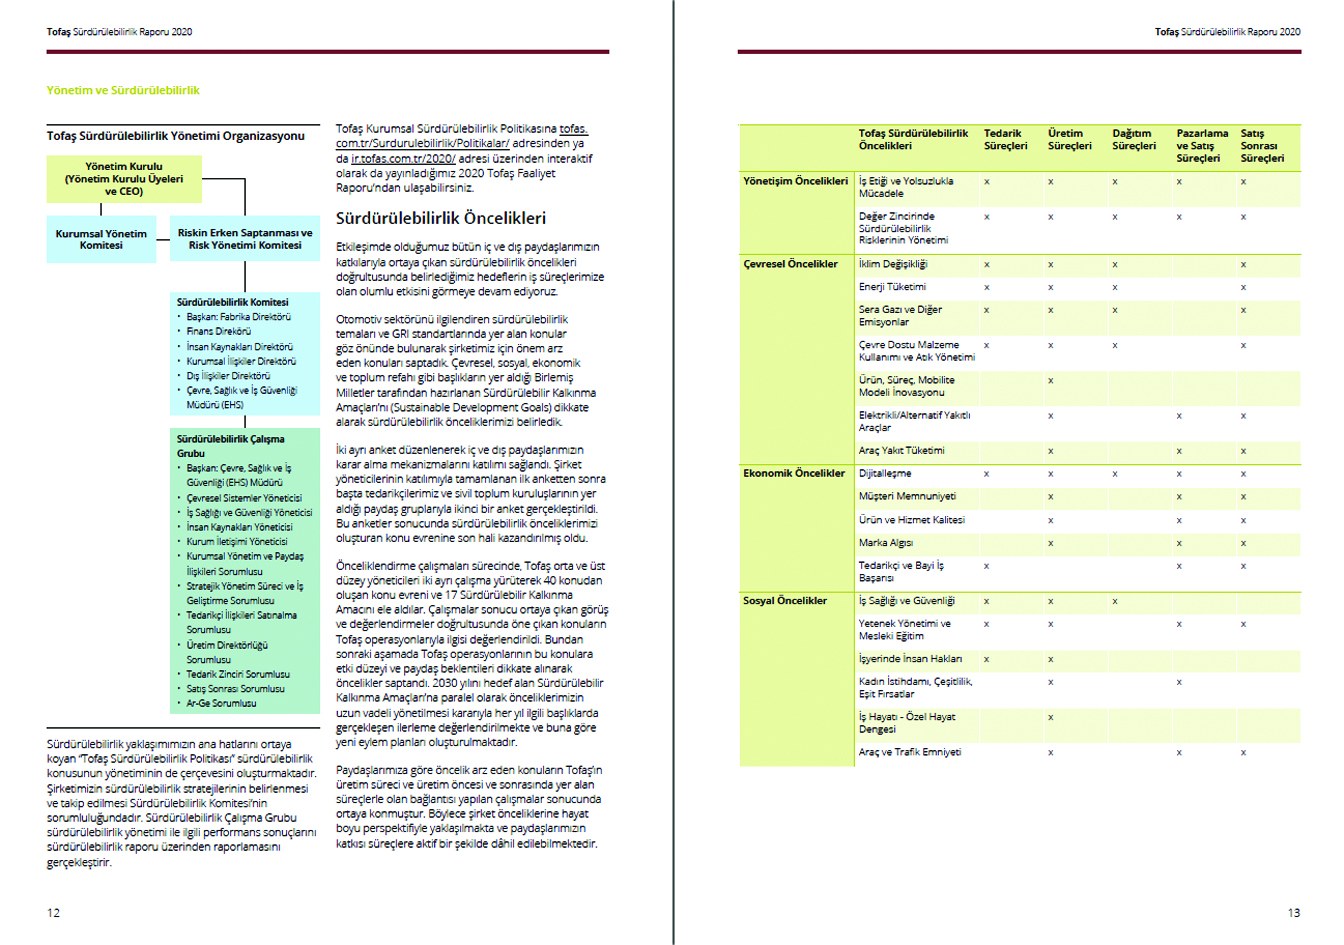 TOFAŞ / 2020 Sürdürülebilirlik Raporu / 2020 Sustainability Report